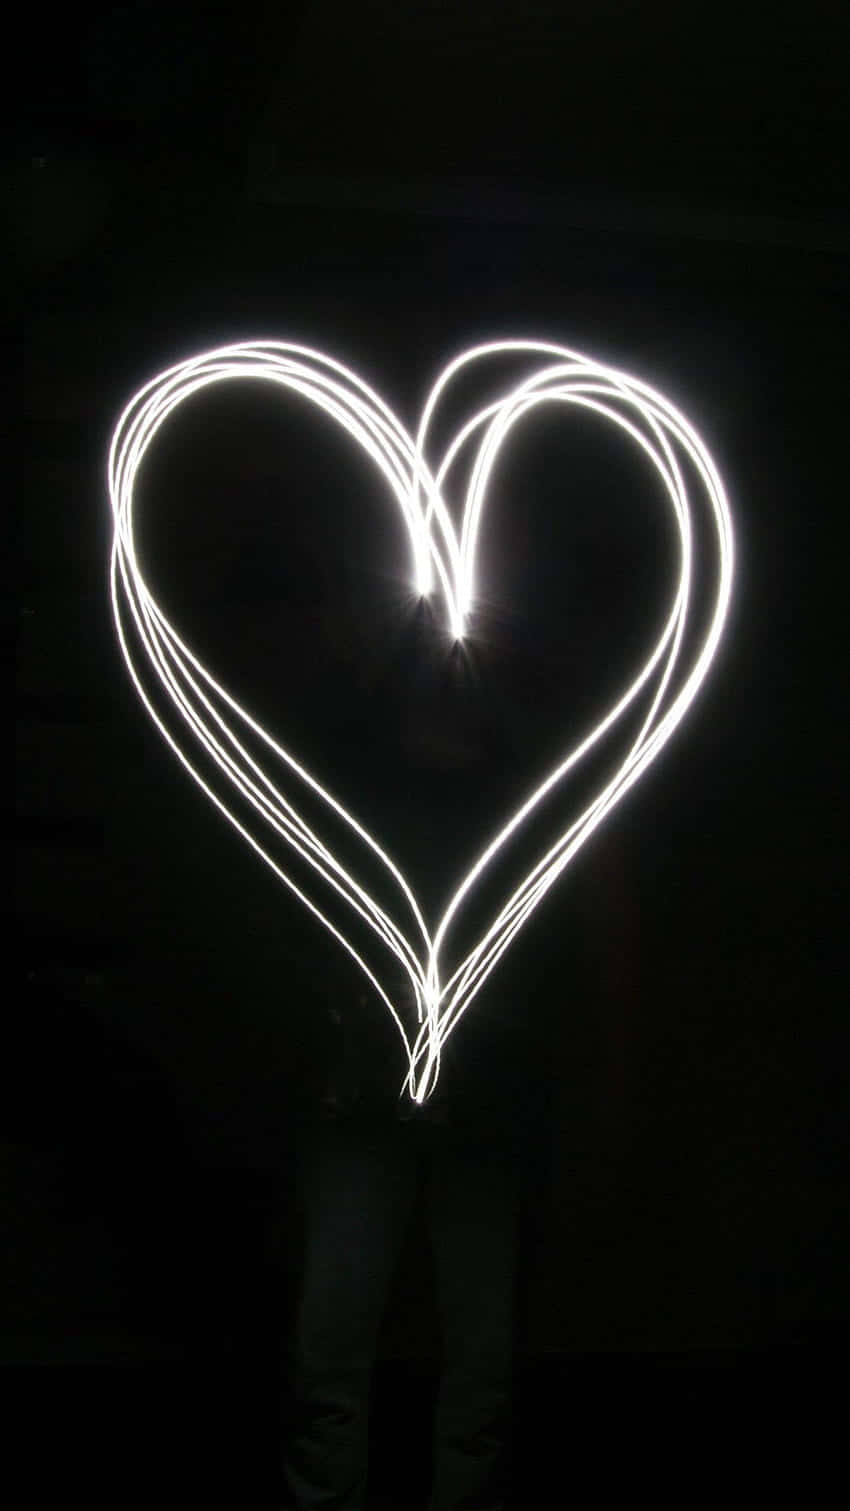 Dunklesästhetisches Herz Lichtbild